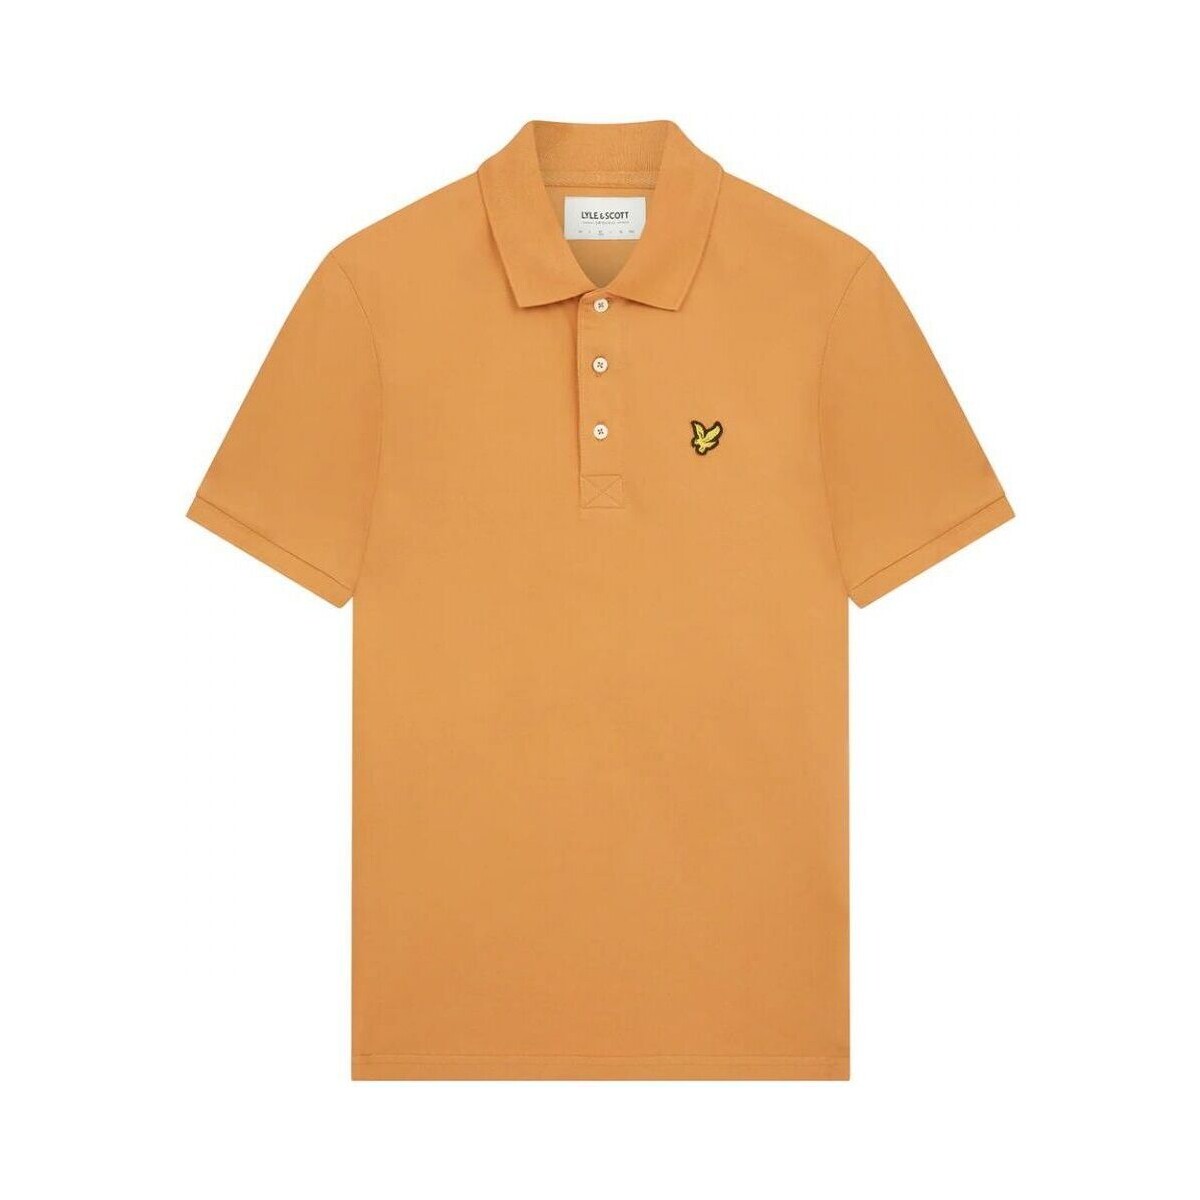 Kleidung Herren T-Shirts & Poloshirts Lyle & Scott SP400VOG POLO SHIRT-W869 SALTBURN Orange